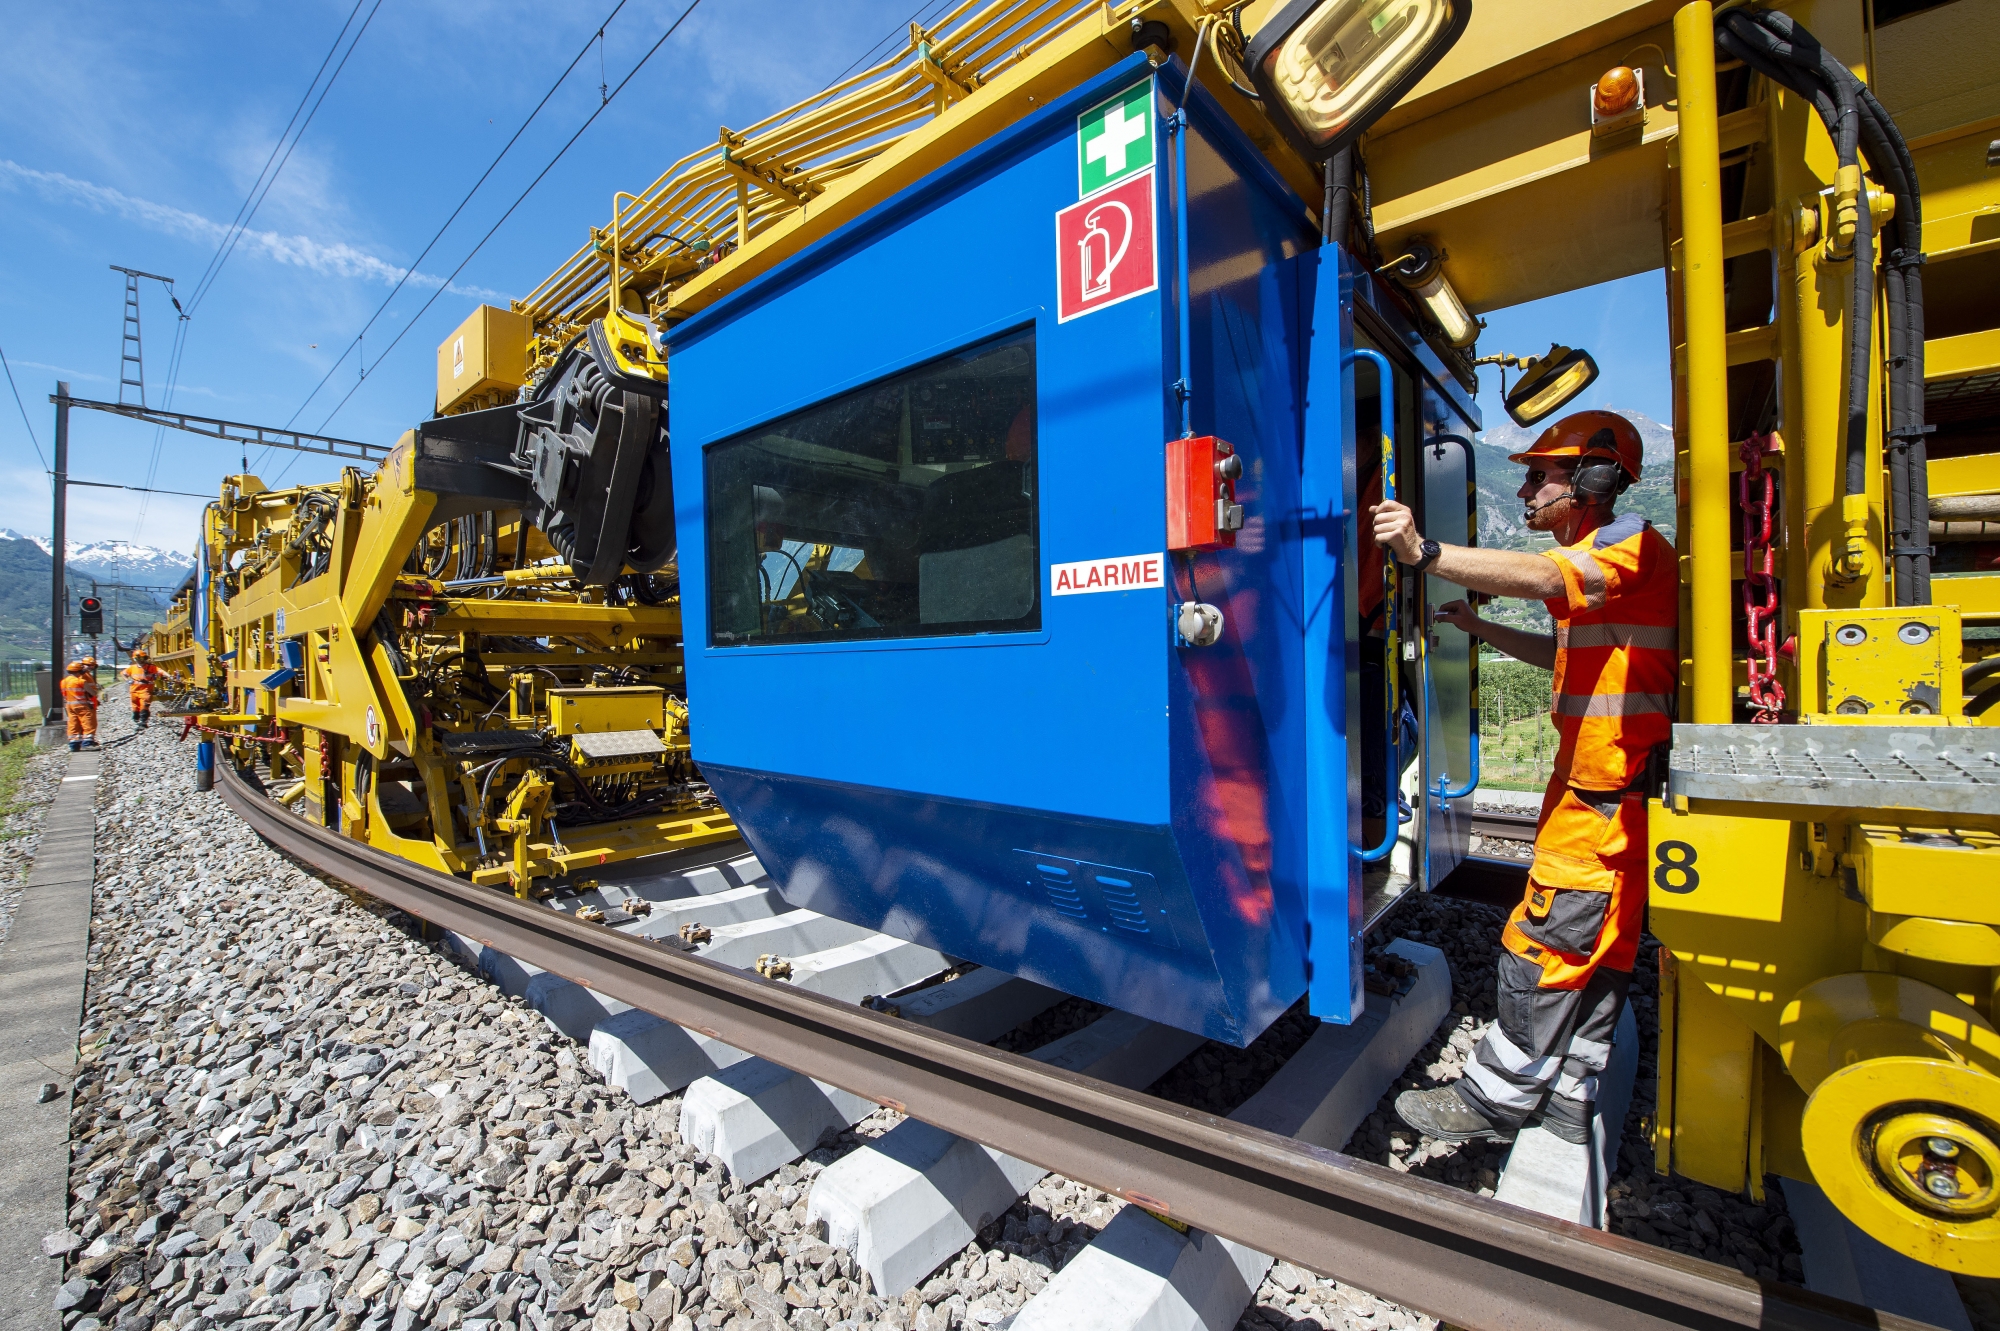 La machine est faite sur mesure pour les voies ferrées suisses. Elle écarte les rails pour permettre le remplacement des traverses.